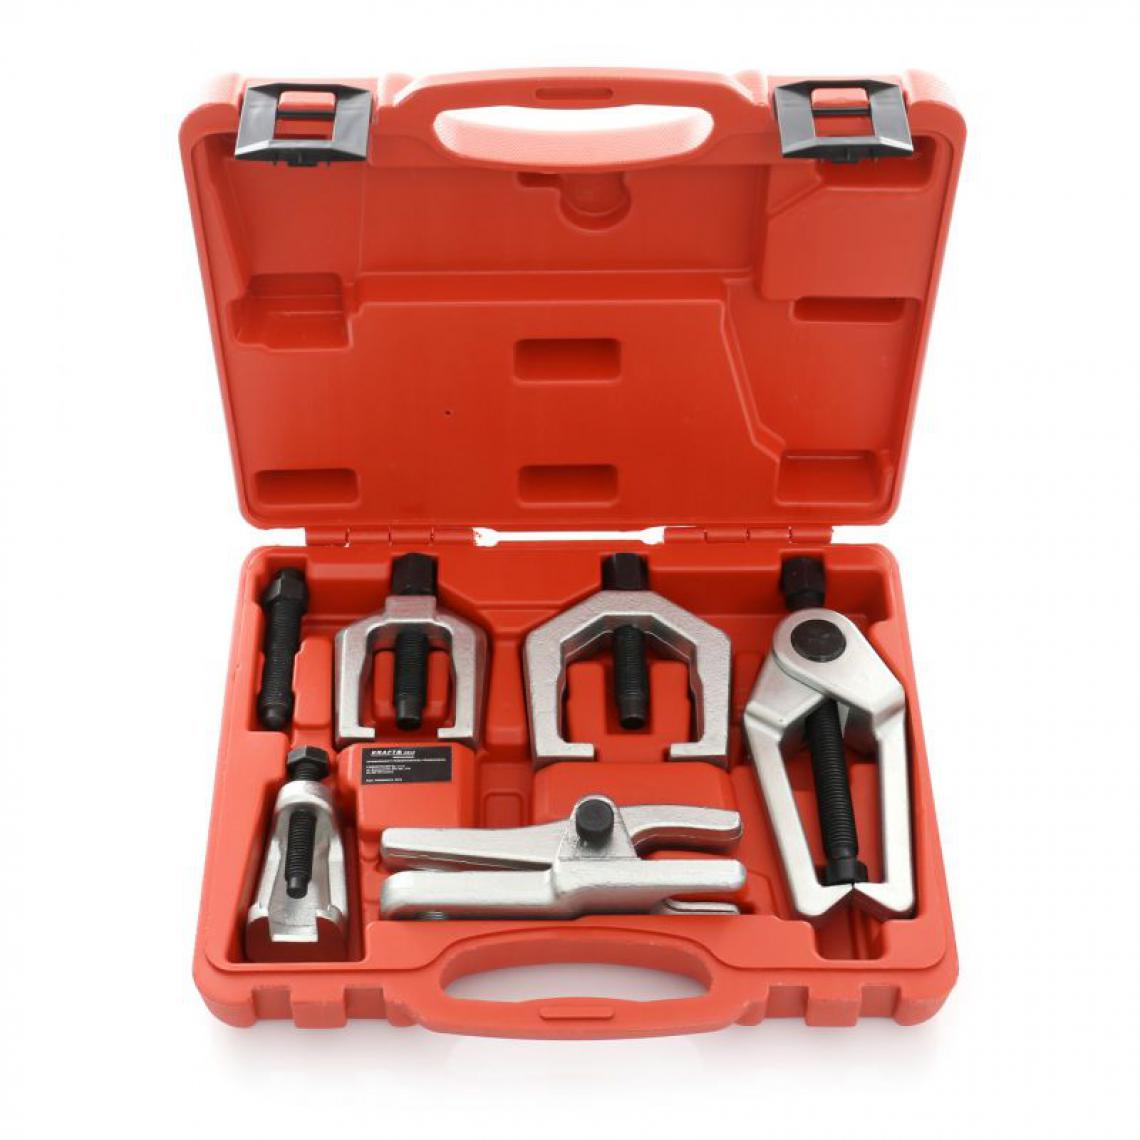 Hucoco - DCRAFT - Kit d'extracteurs de roulement - 5 outils - Pour extraire les roulements - Rouge - Boulonneuse